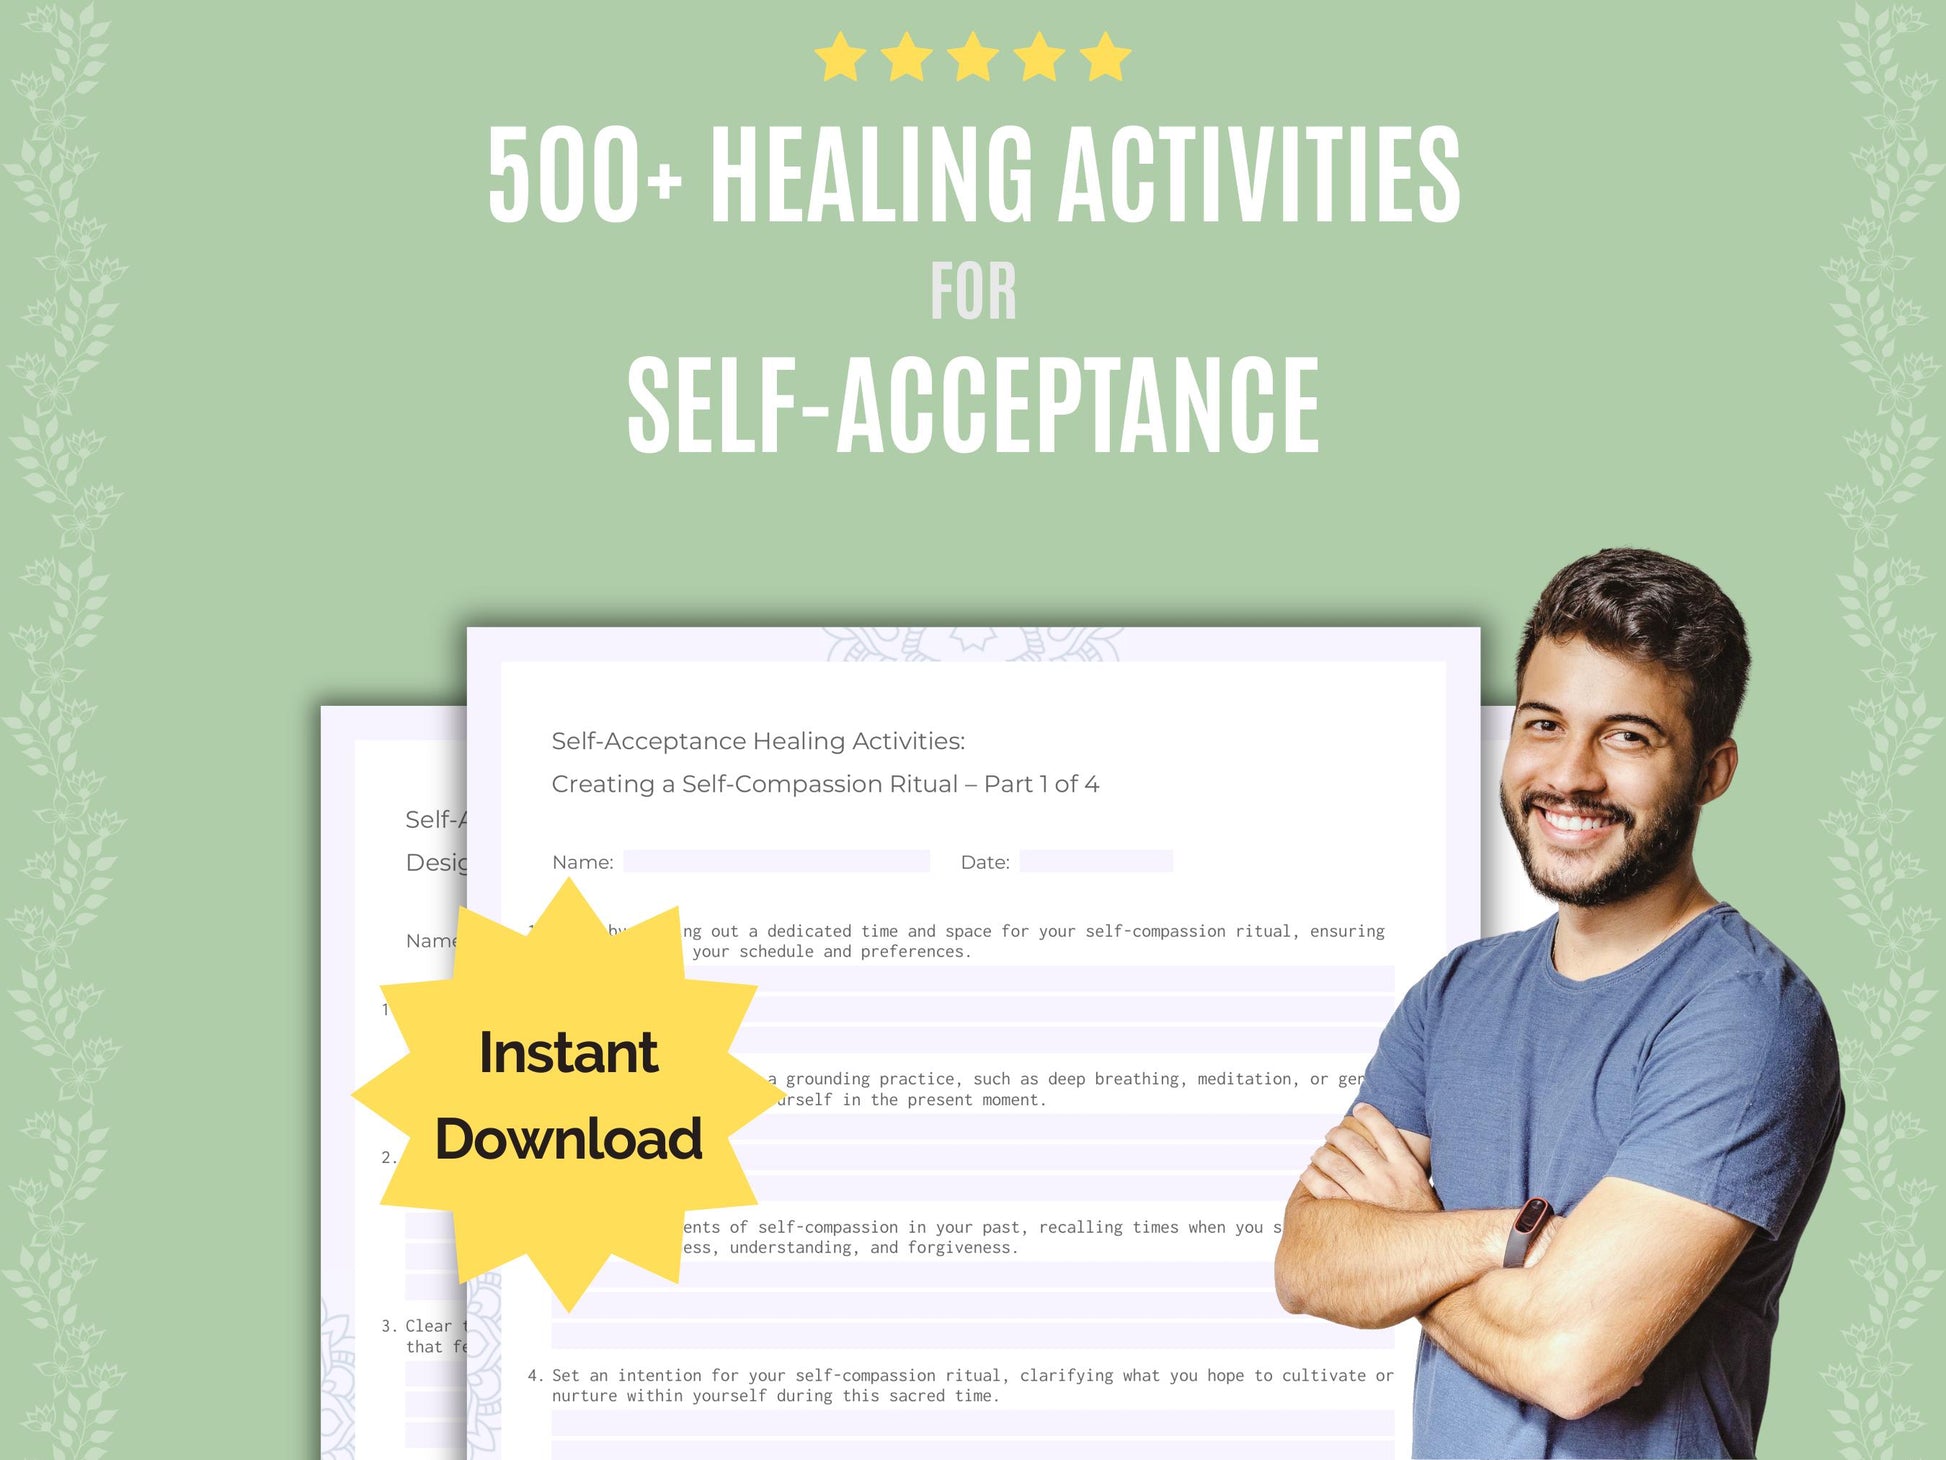 Self-Acceptance Healing Activities